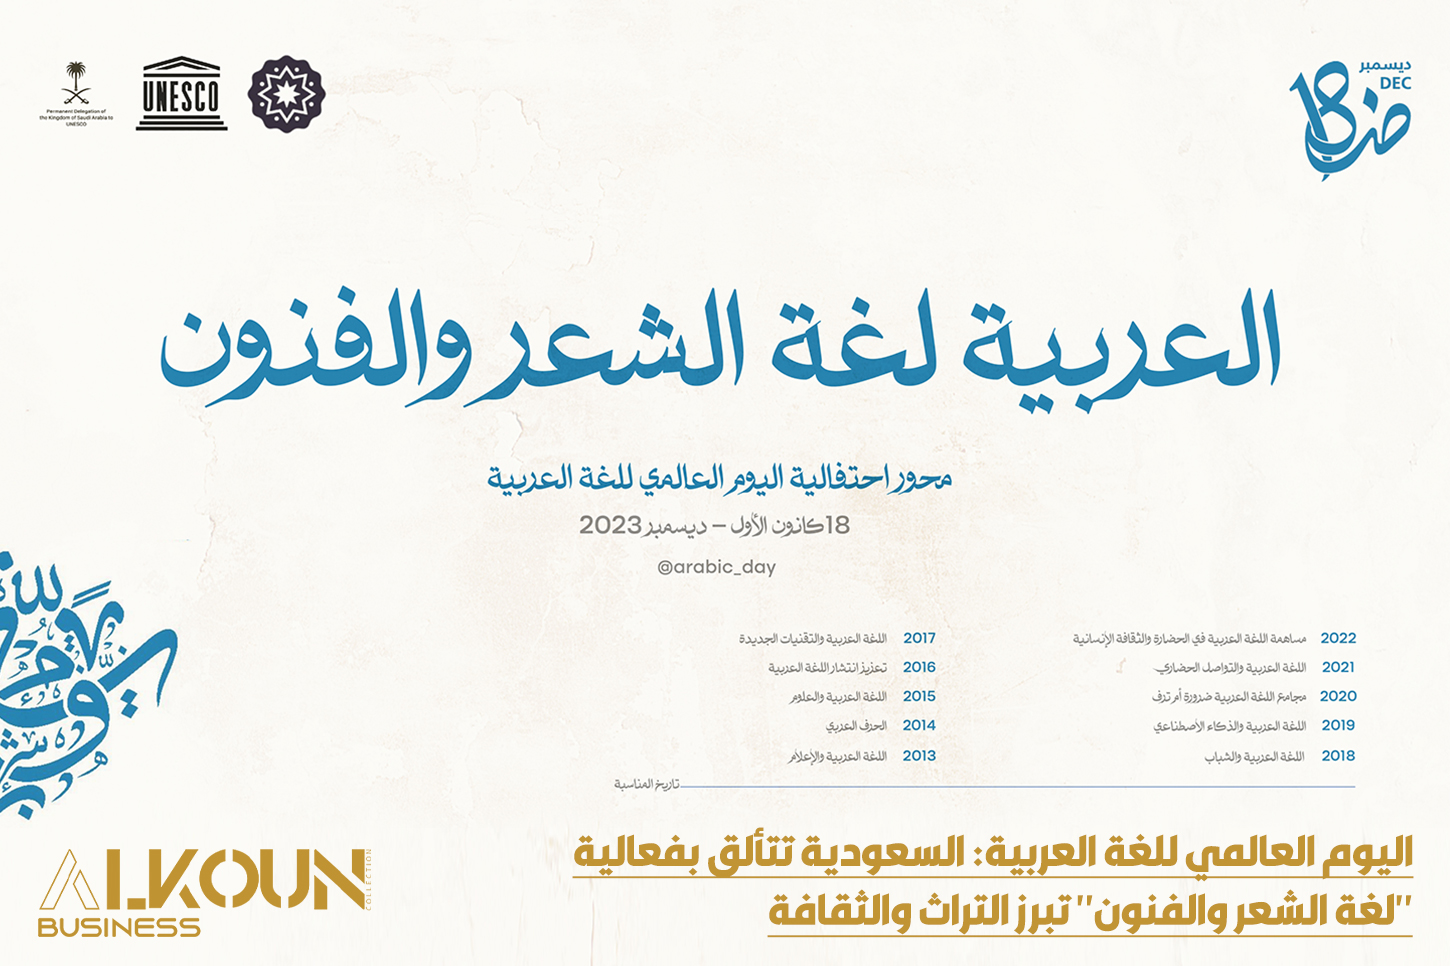 اليوم العالمي للغة العربية: السعودية تتألق بفعالية "لغة الشعر والفنون" تبرز التراث والثقافة